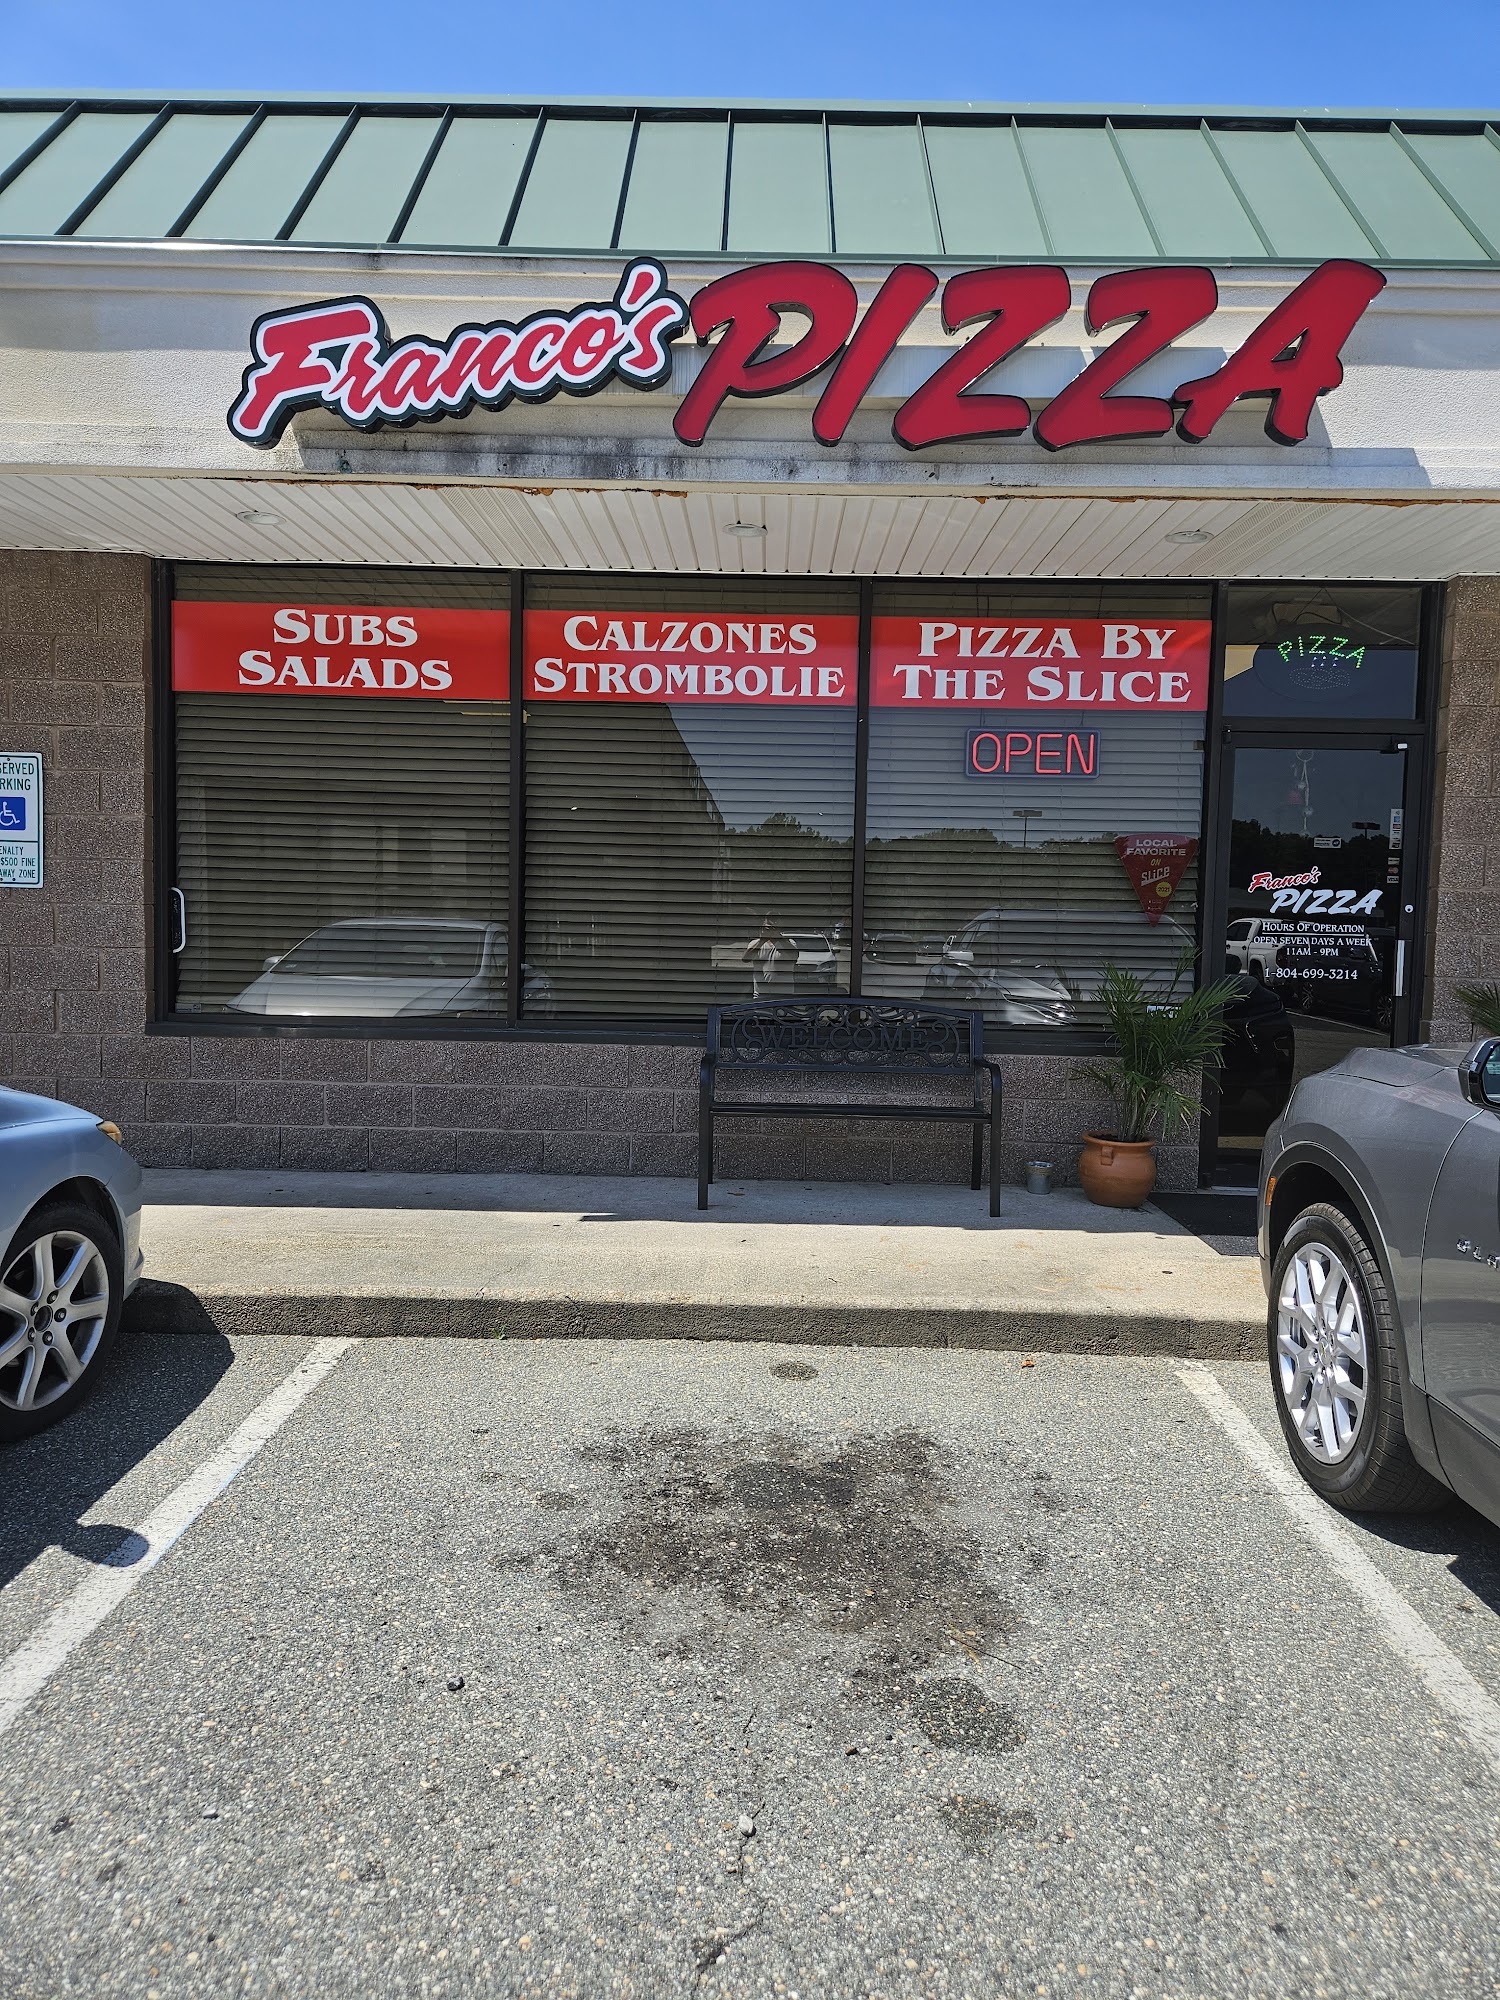 Franco’s pizza